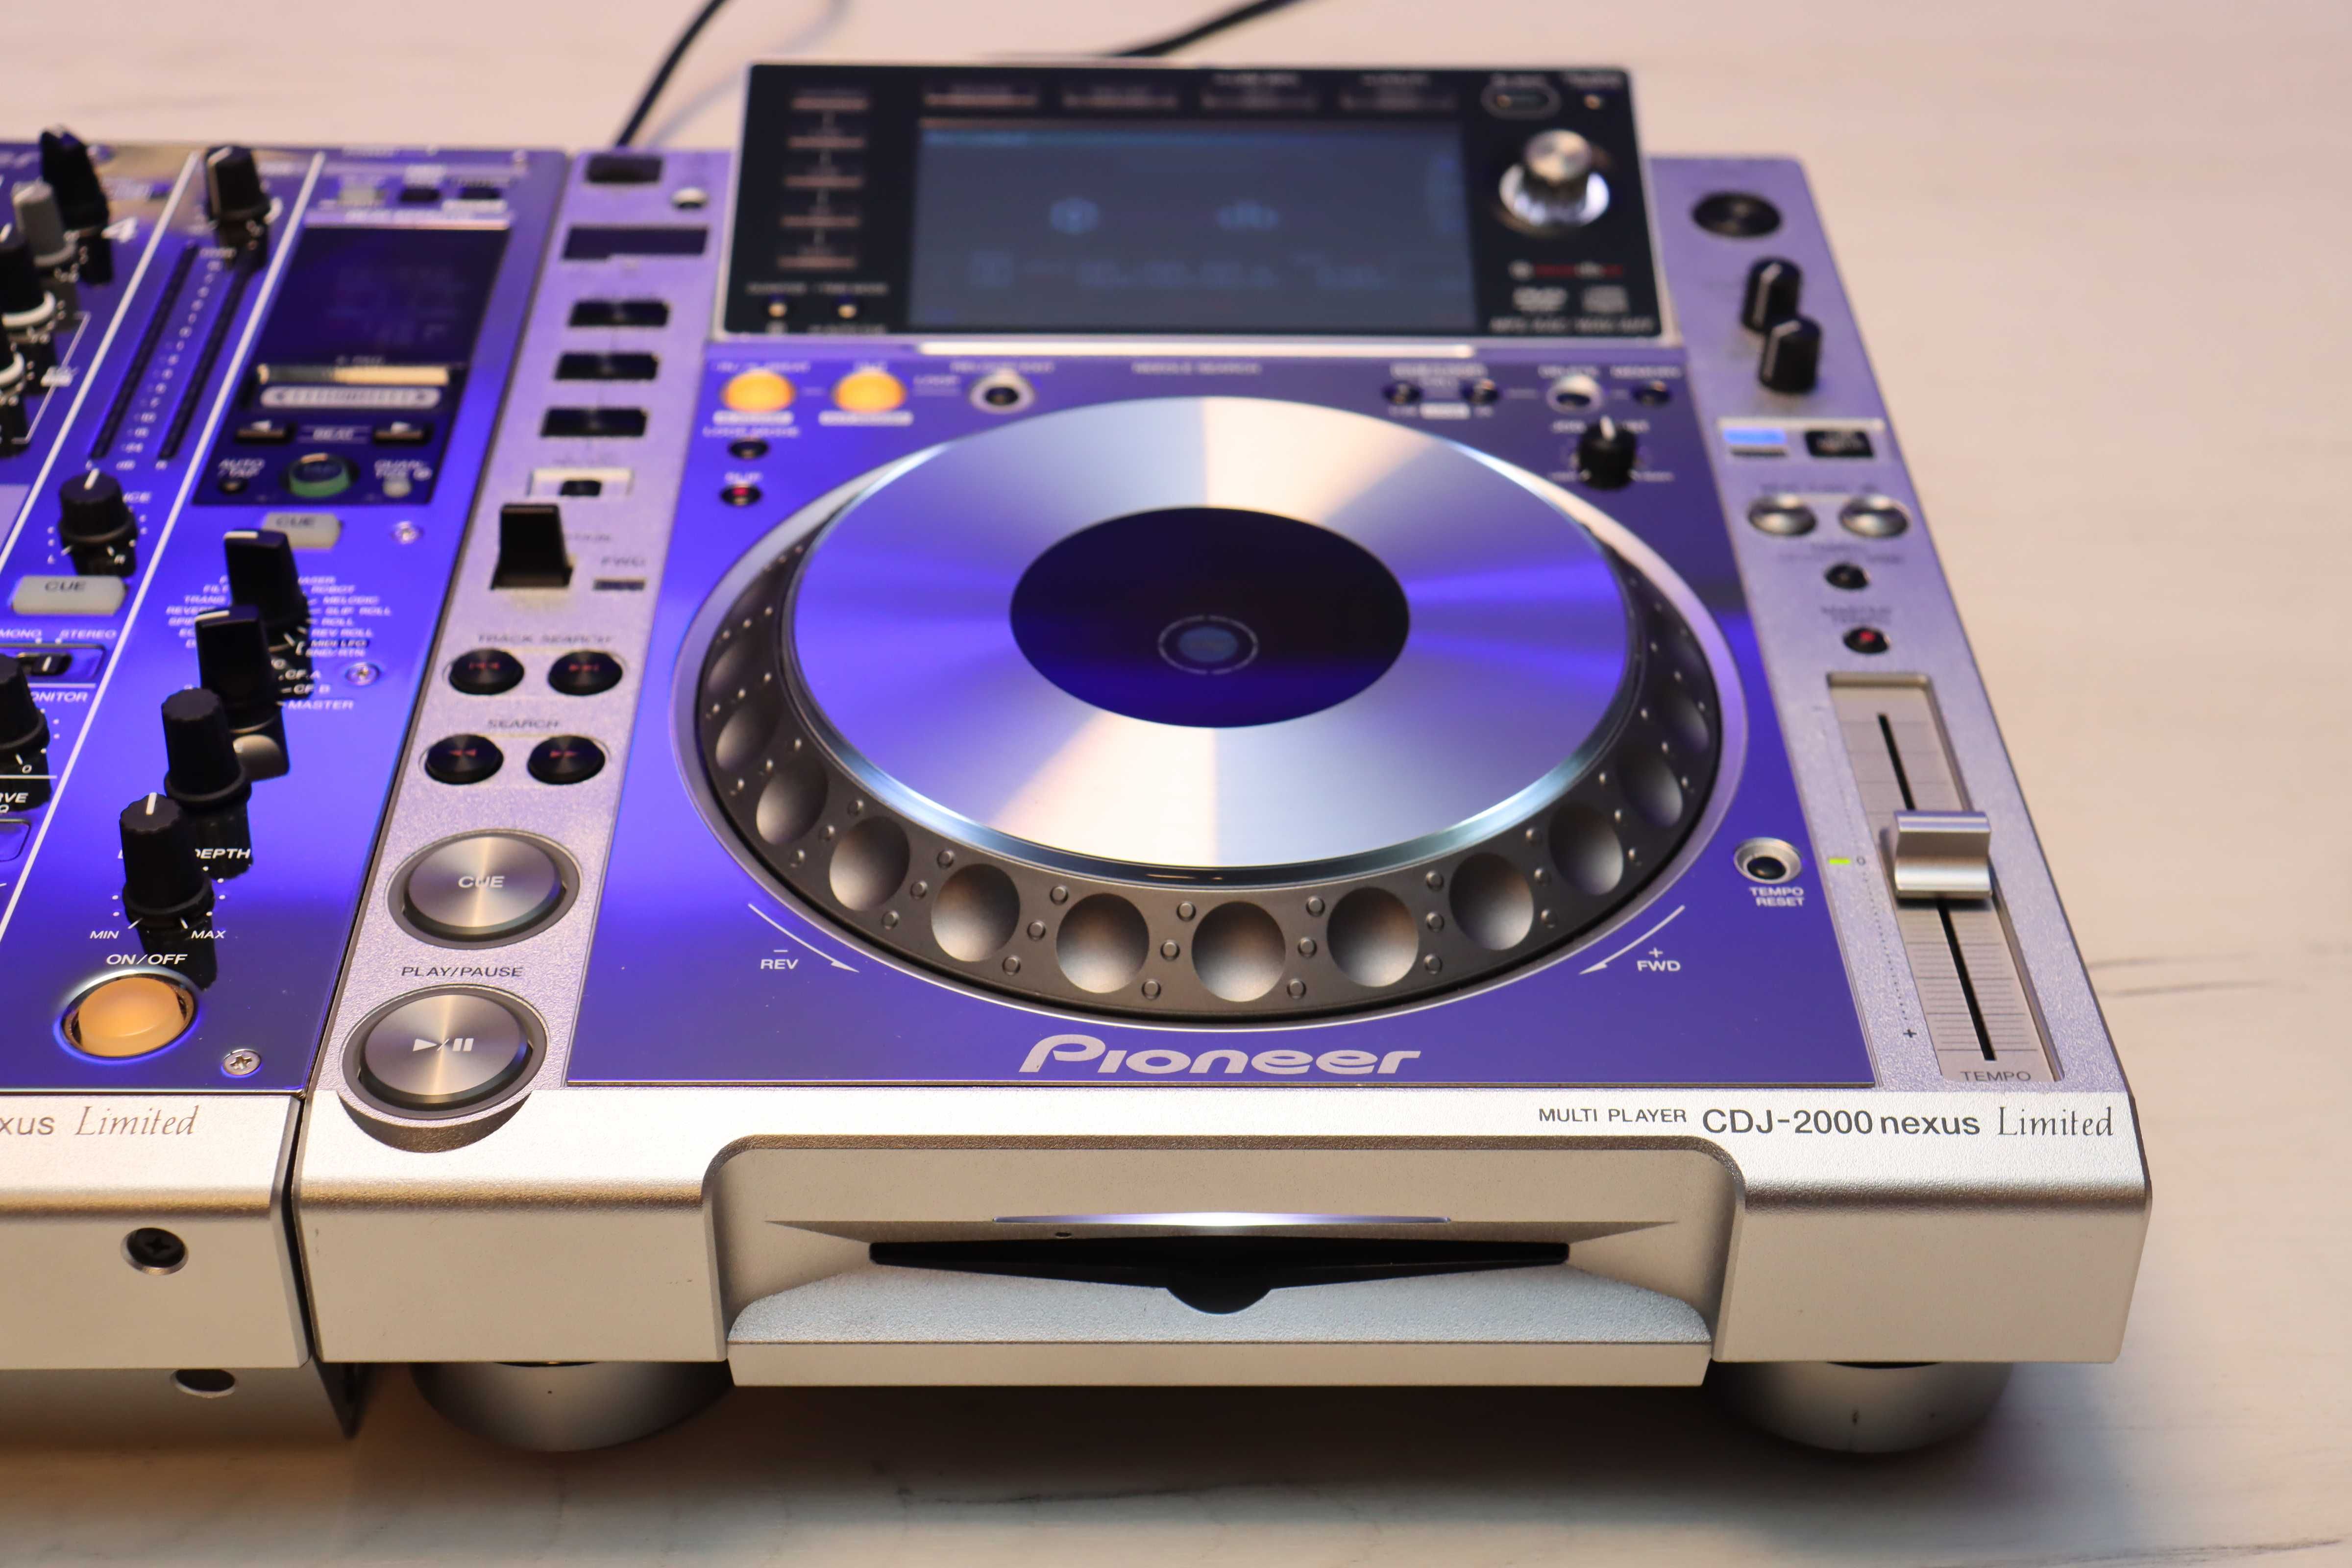 2 x Pioneer CDJ 2000 nexus DJM 900 nexus Platinum Limited